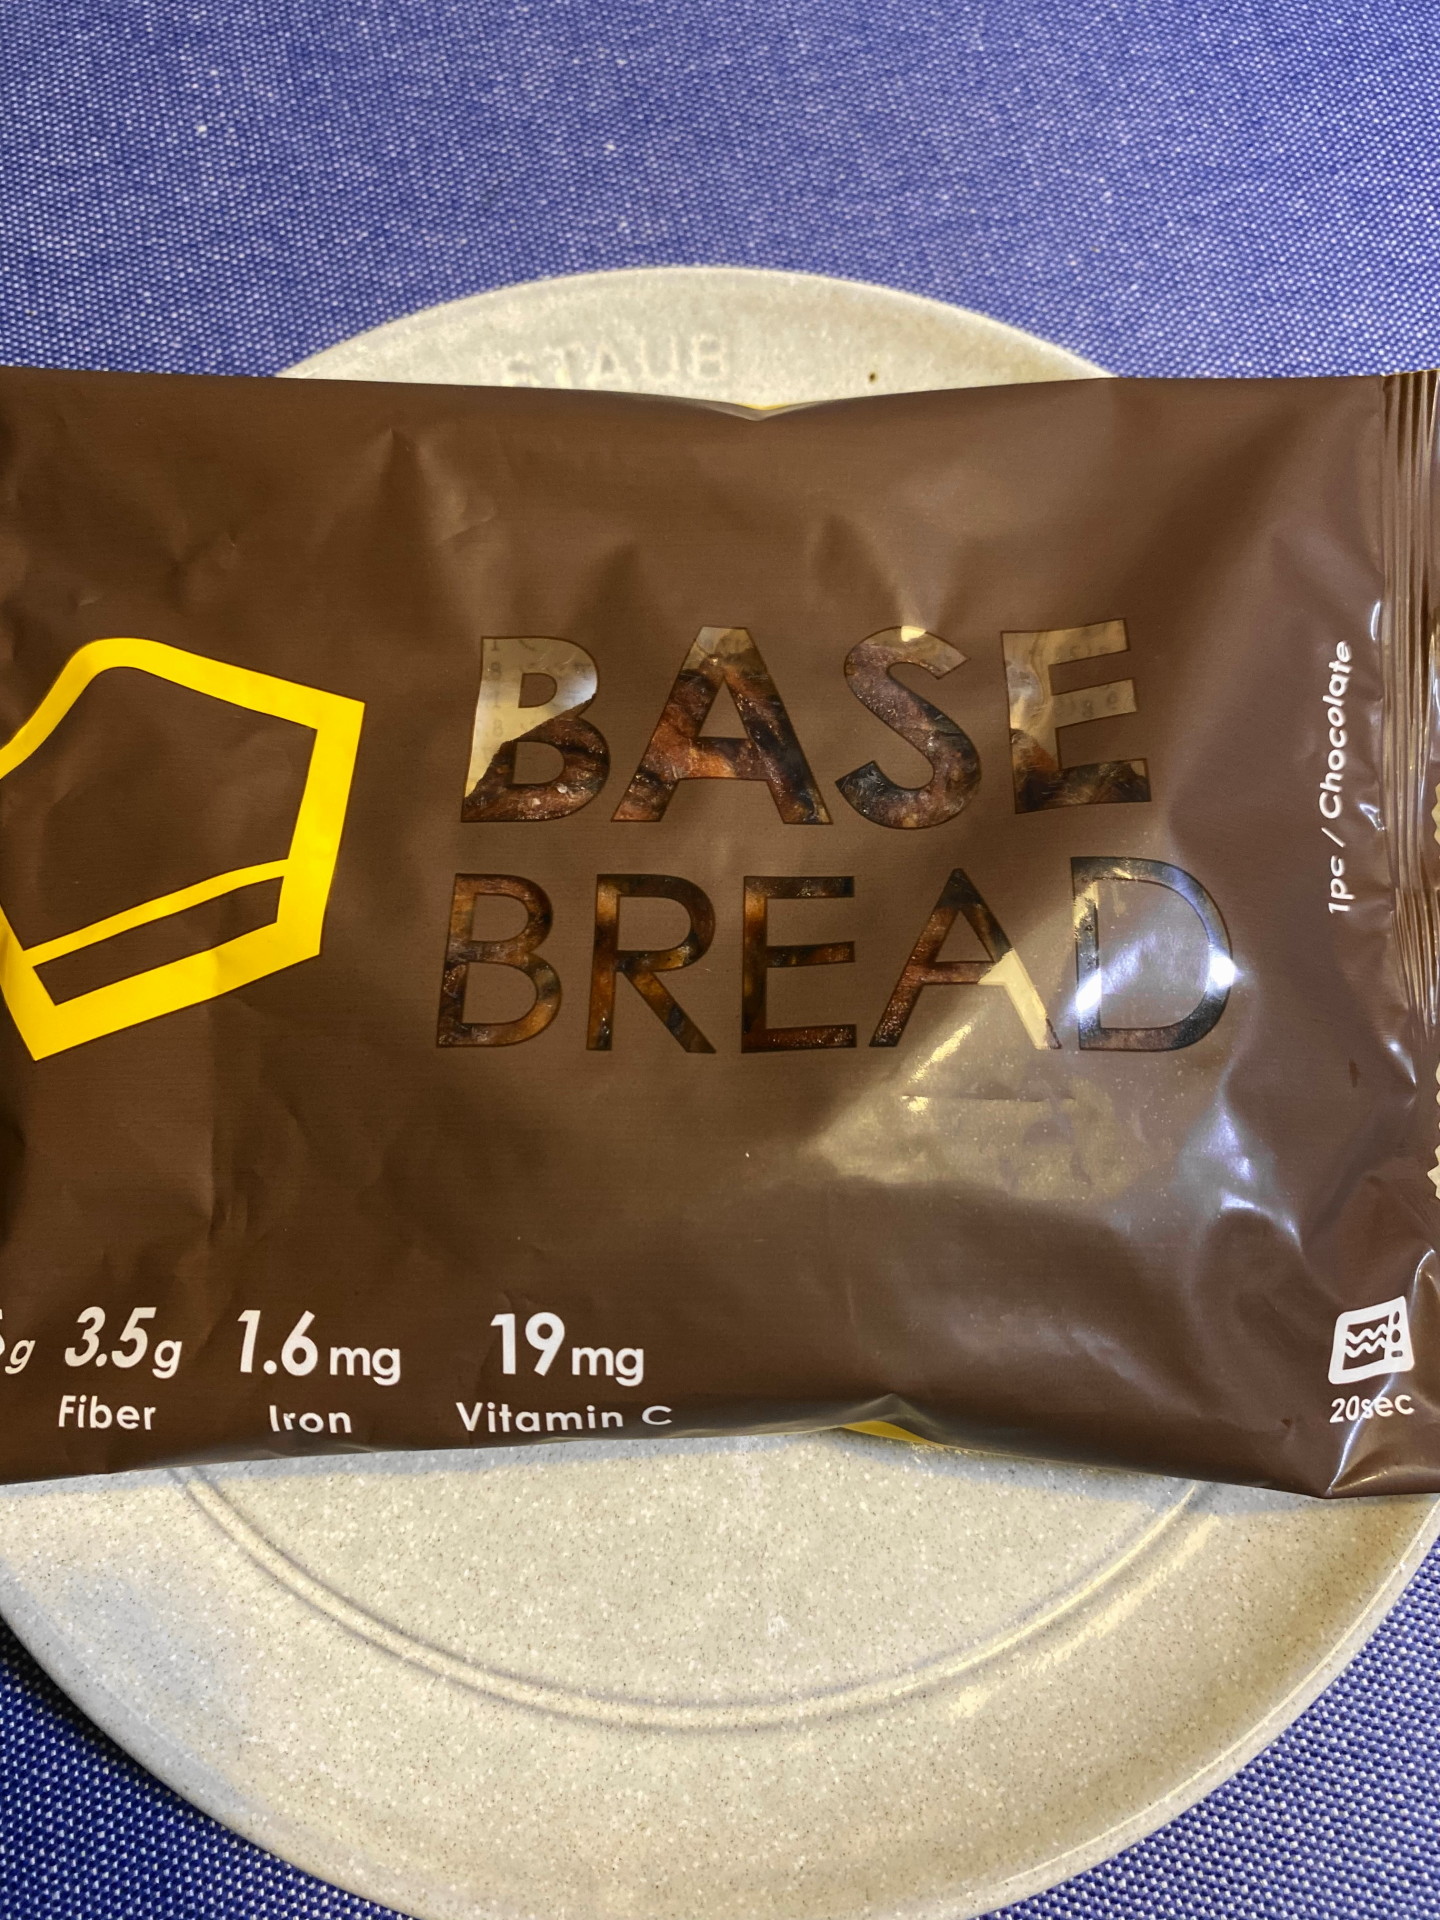 BASE BREADチョコレートのパッケージ